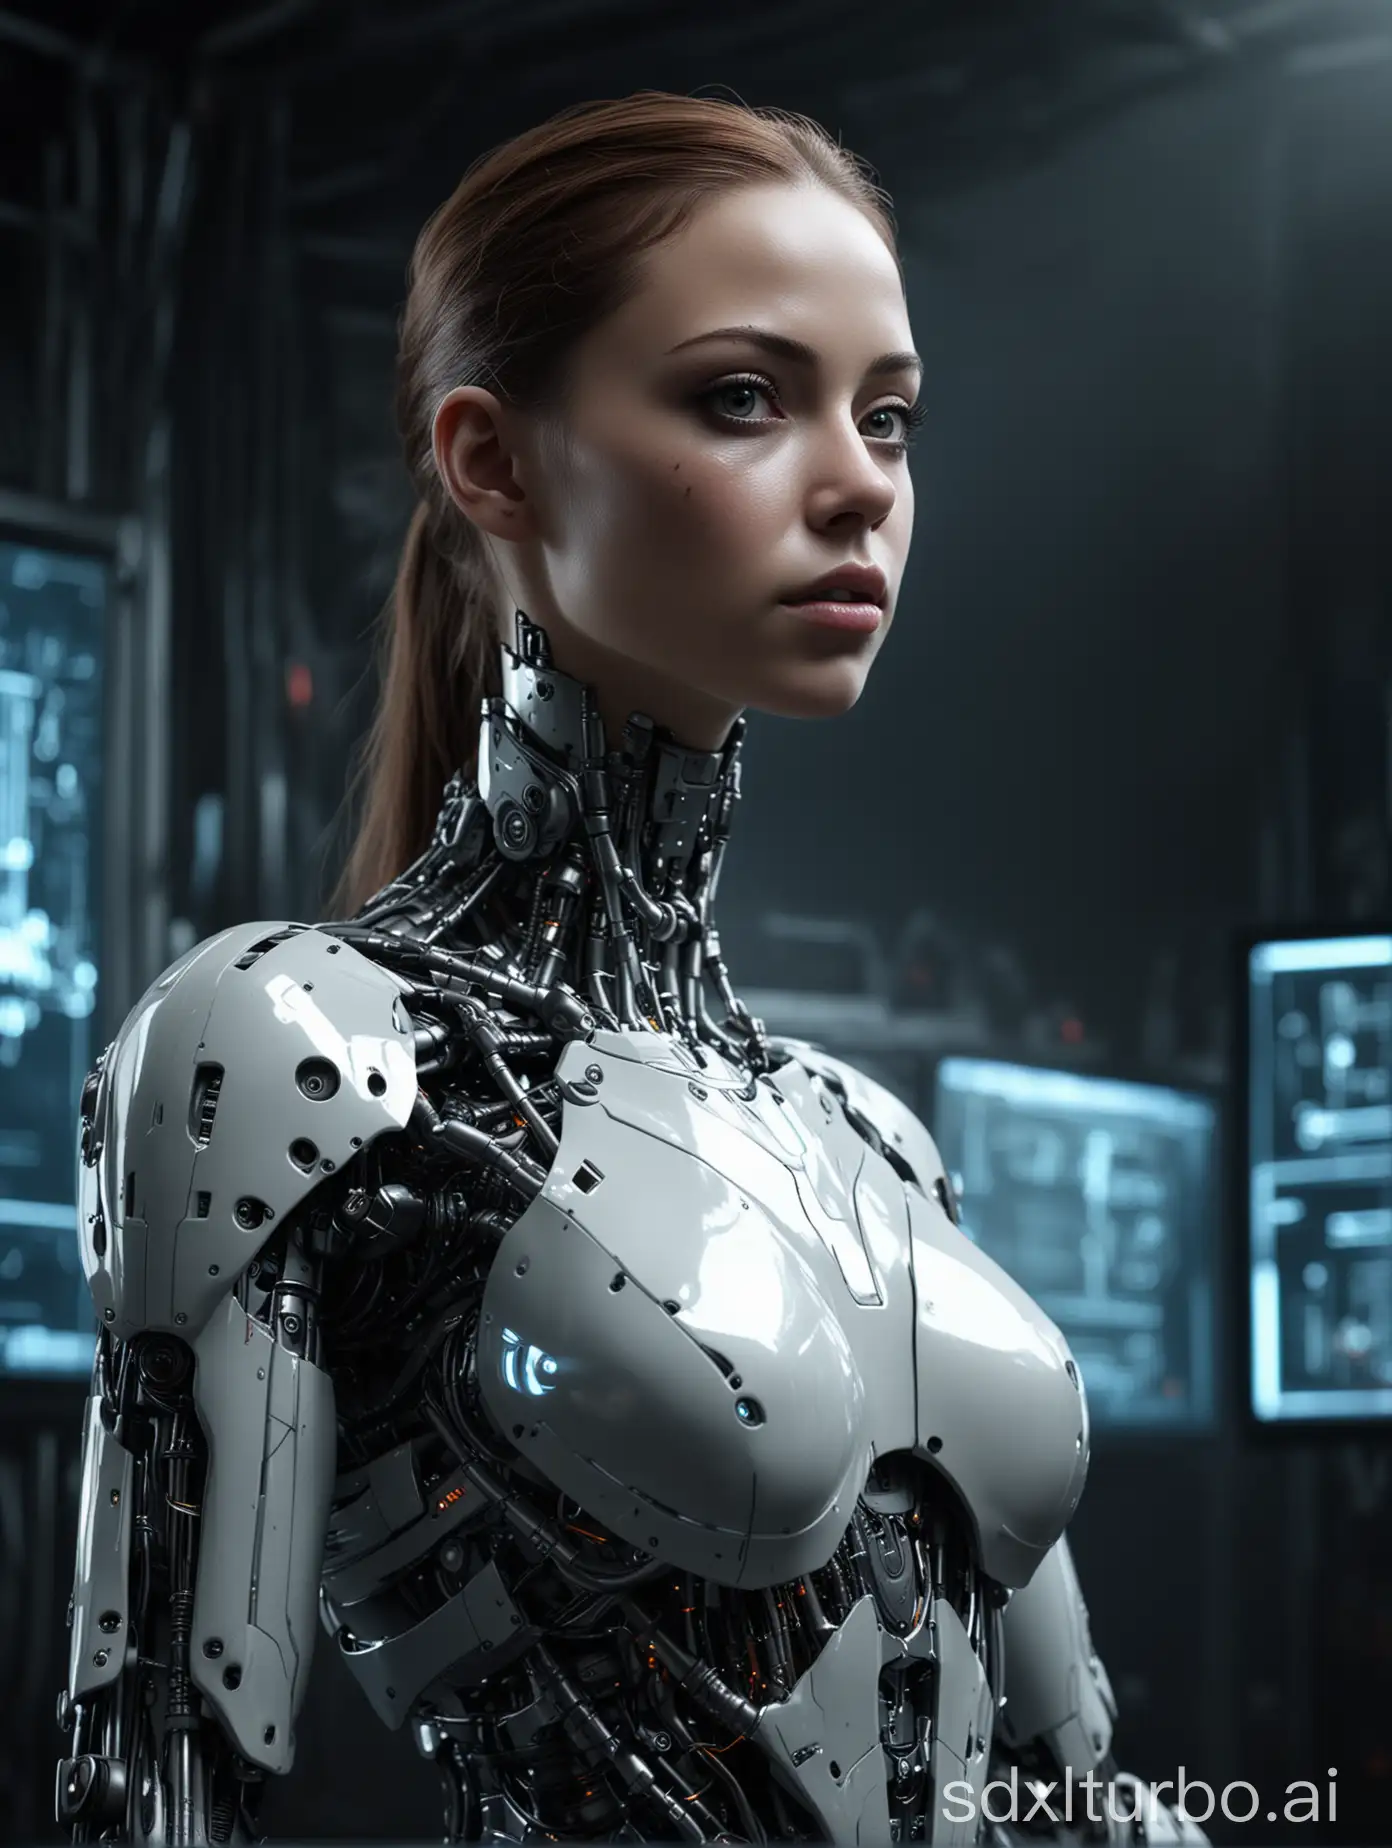 ein graziler, durchsichiger weiblicher Cyborg aus der Zukunft, 
der im dunklen steht,
im Hintergrund ein dunkler futurristischer Computer, 
dystopisch, futuristisch, sehr detailreich, hyperrealistisch, ultrahochauflösend